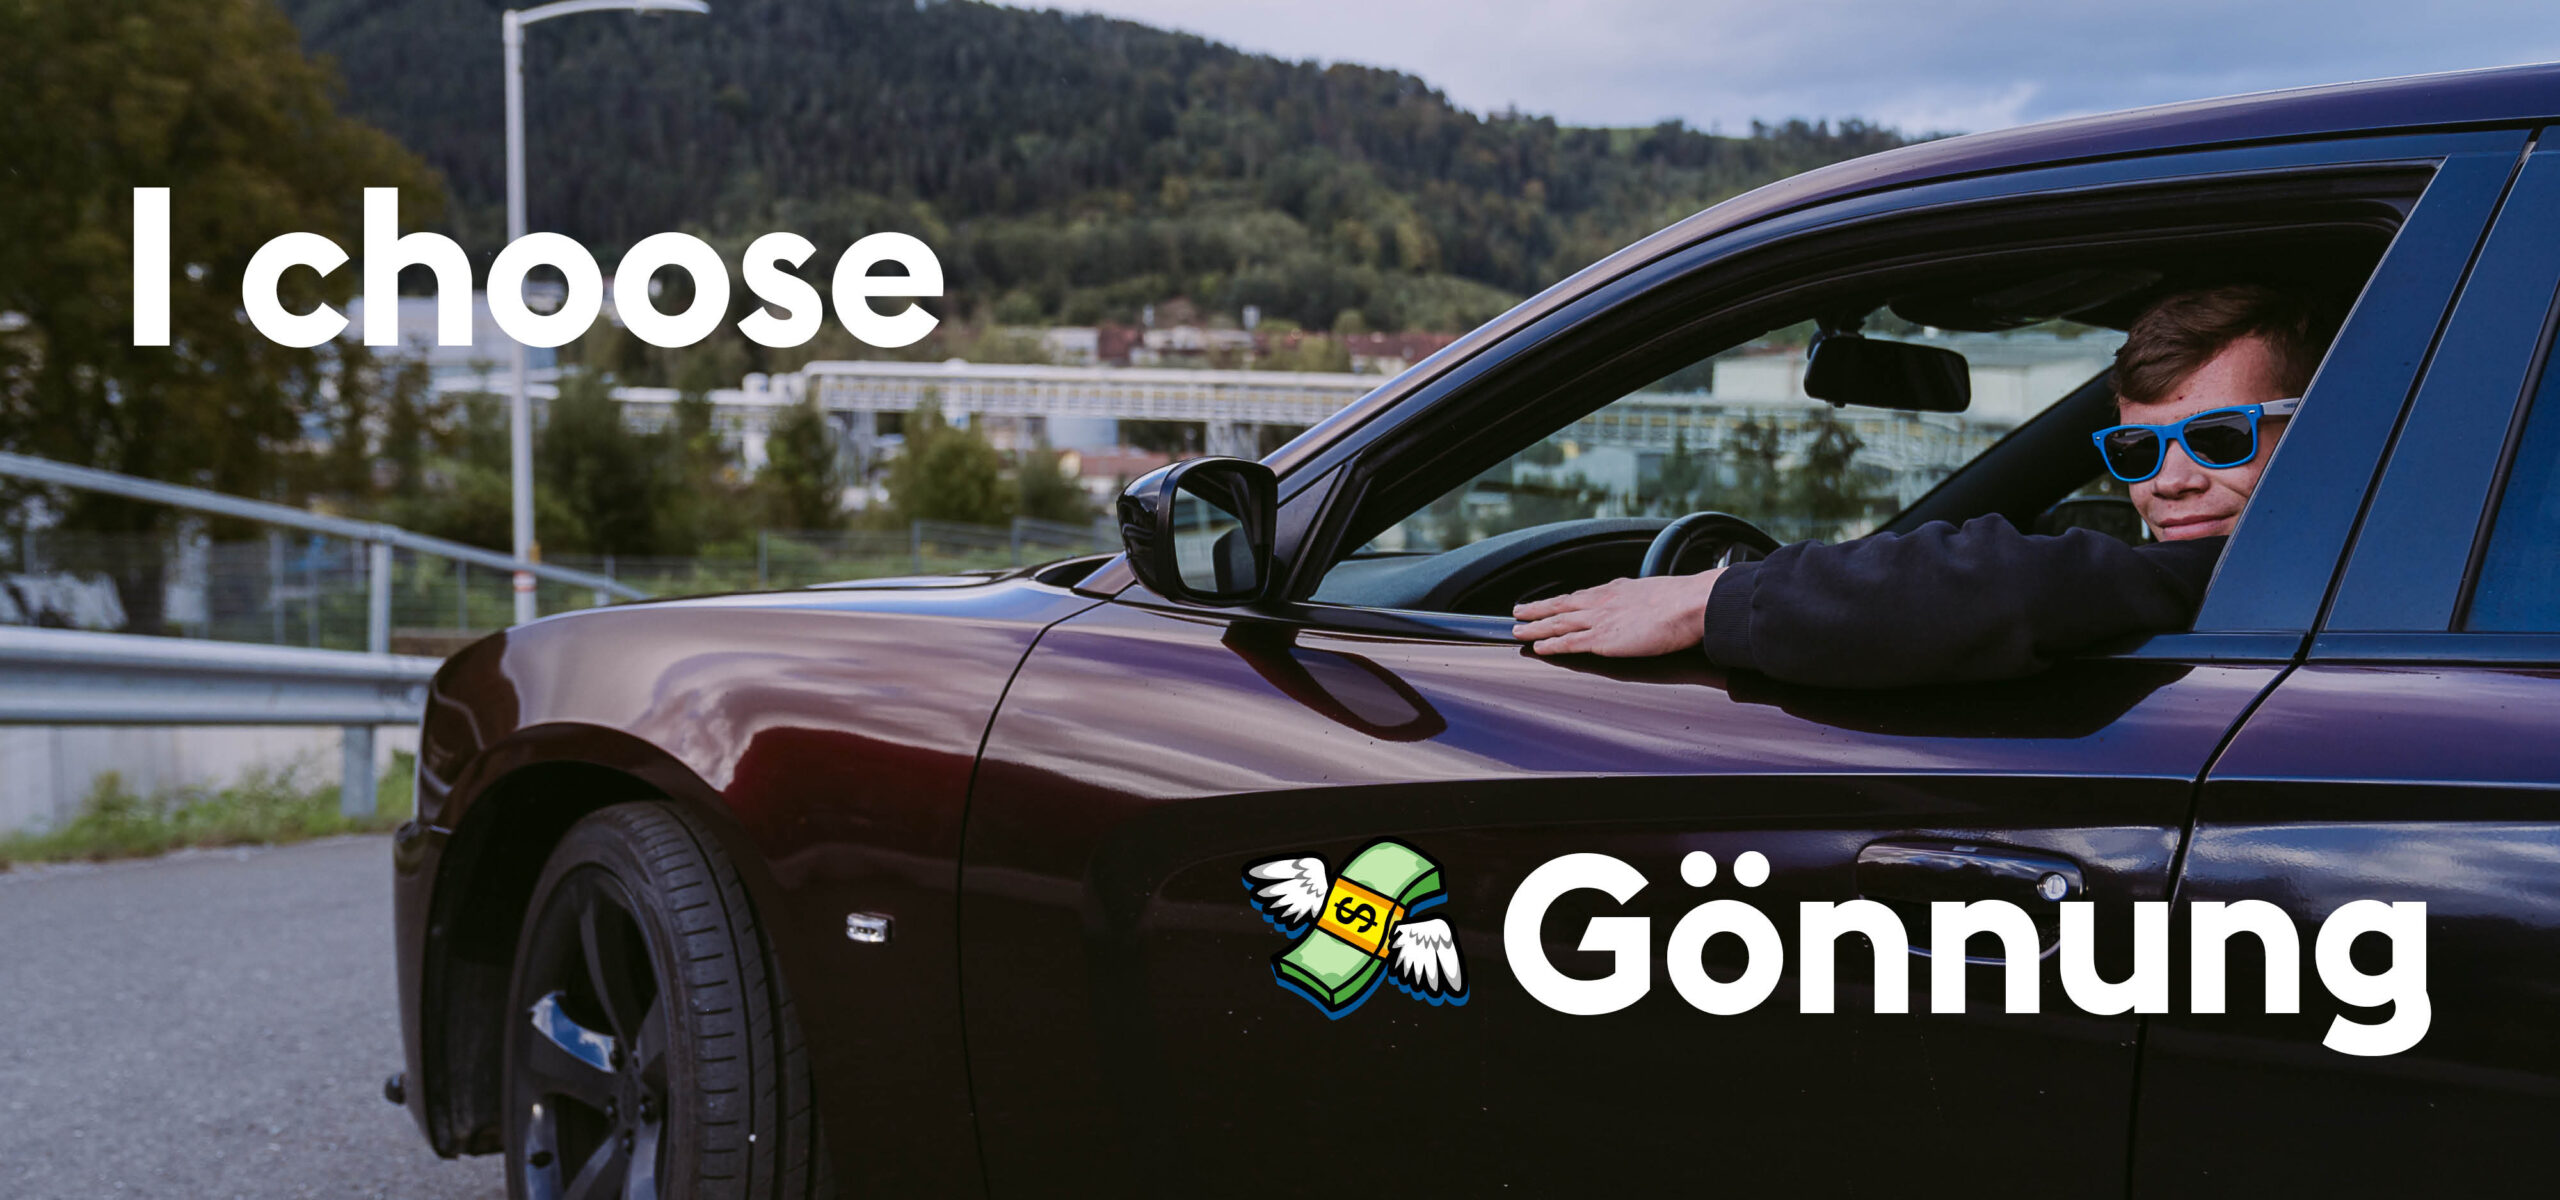 Jugendlicher mit Sonnenbrille sitzt cool in einem Auto mit Headline "I choose Gönnung" mit Geld-Emoji